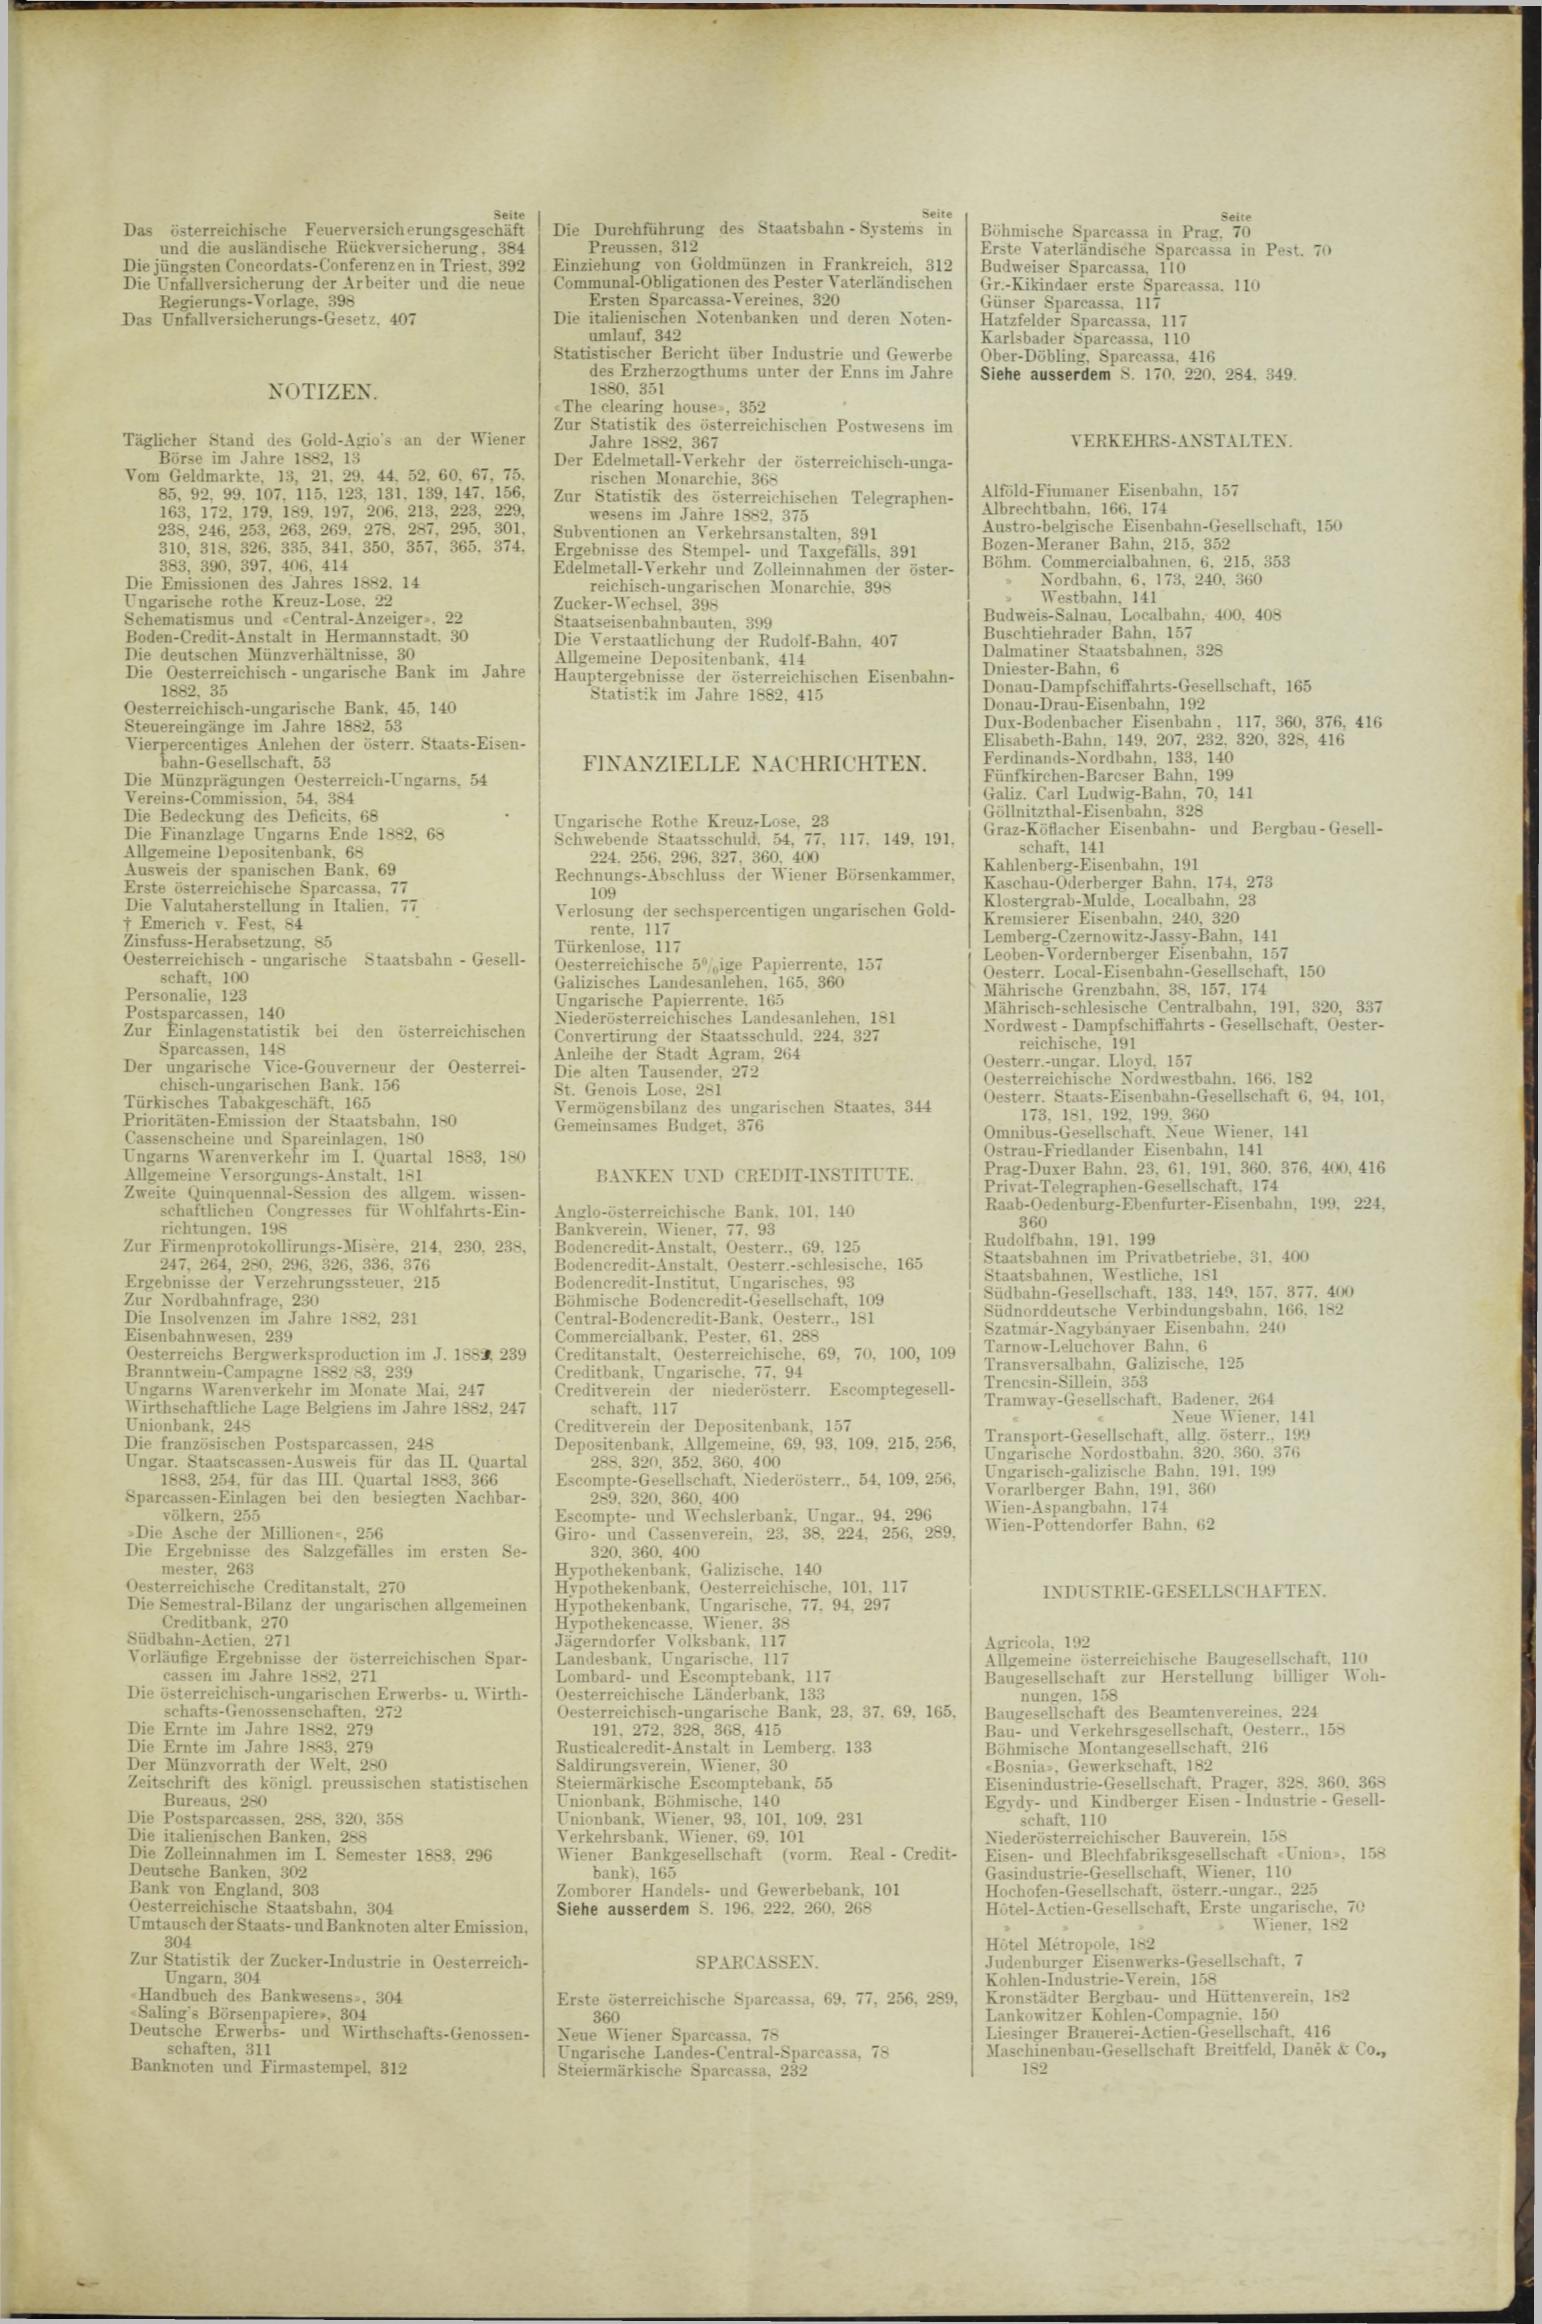 Der Tresor 05.04.1883 - Seite 11